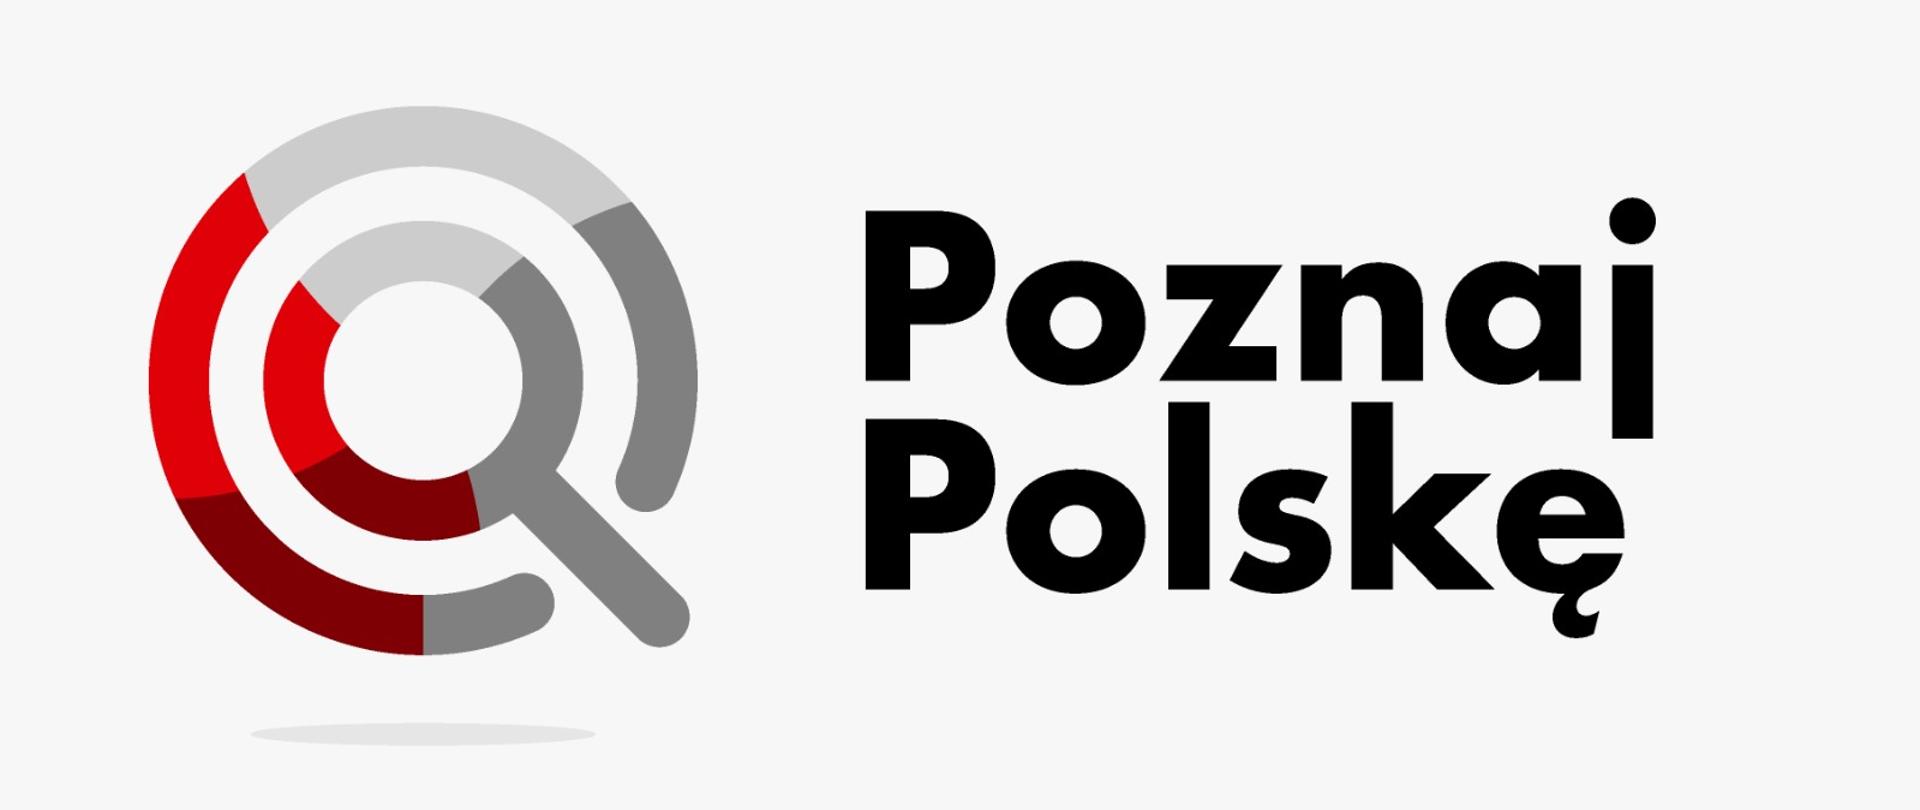 Poznaj Polskę